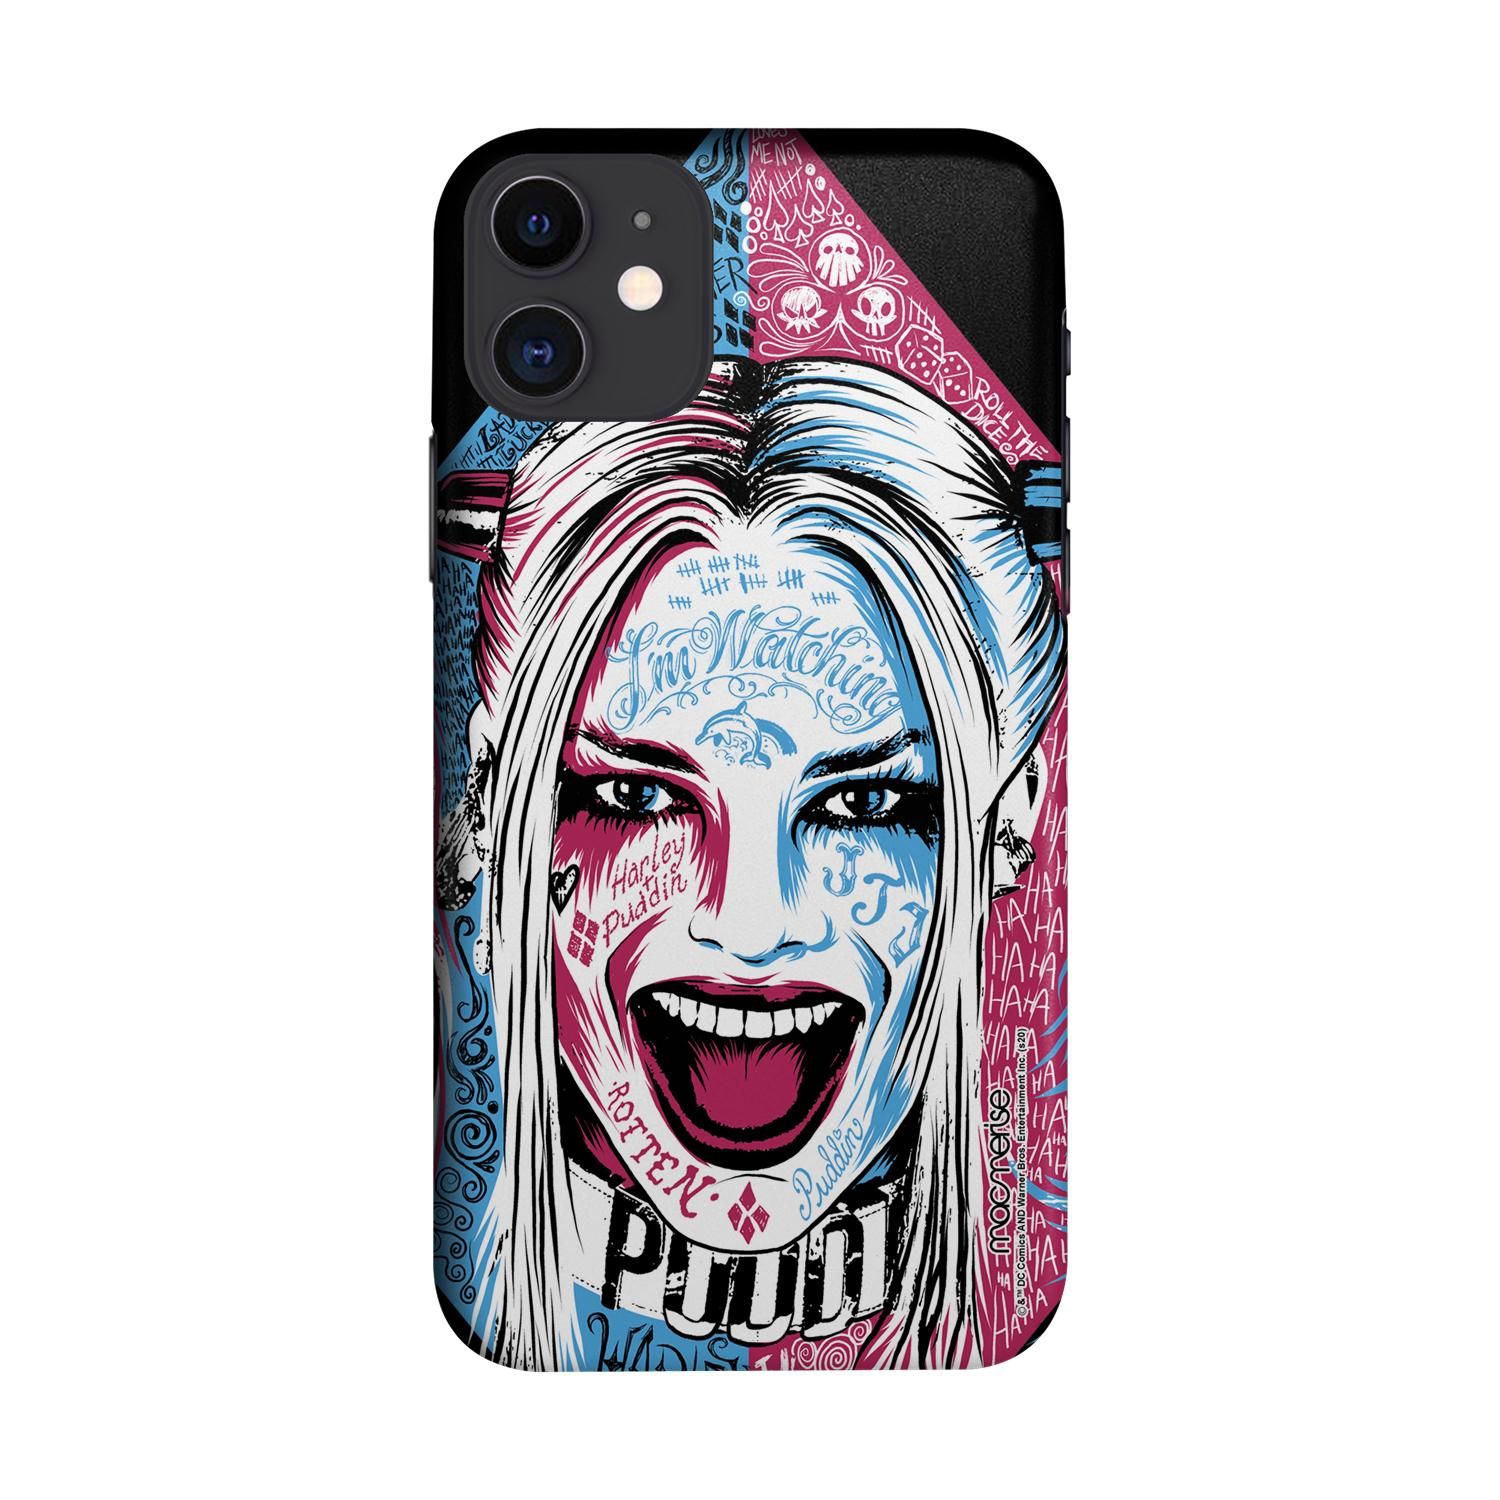 Buy Wicked Harley Quinn - Sleek Phone Case for iPhone 11 Online